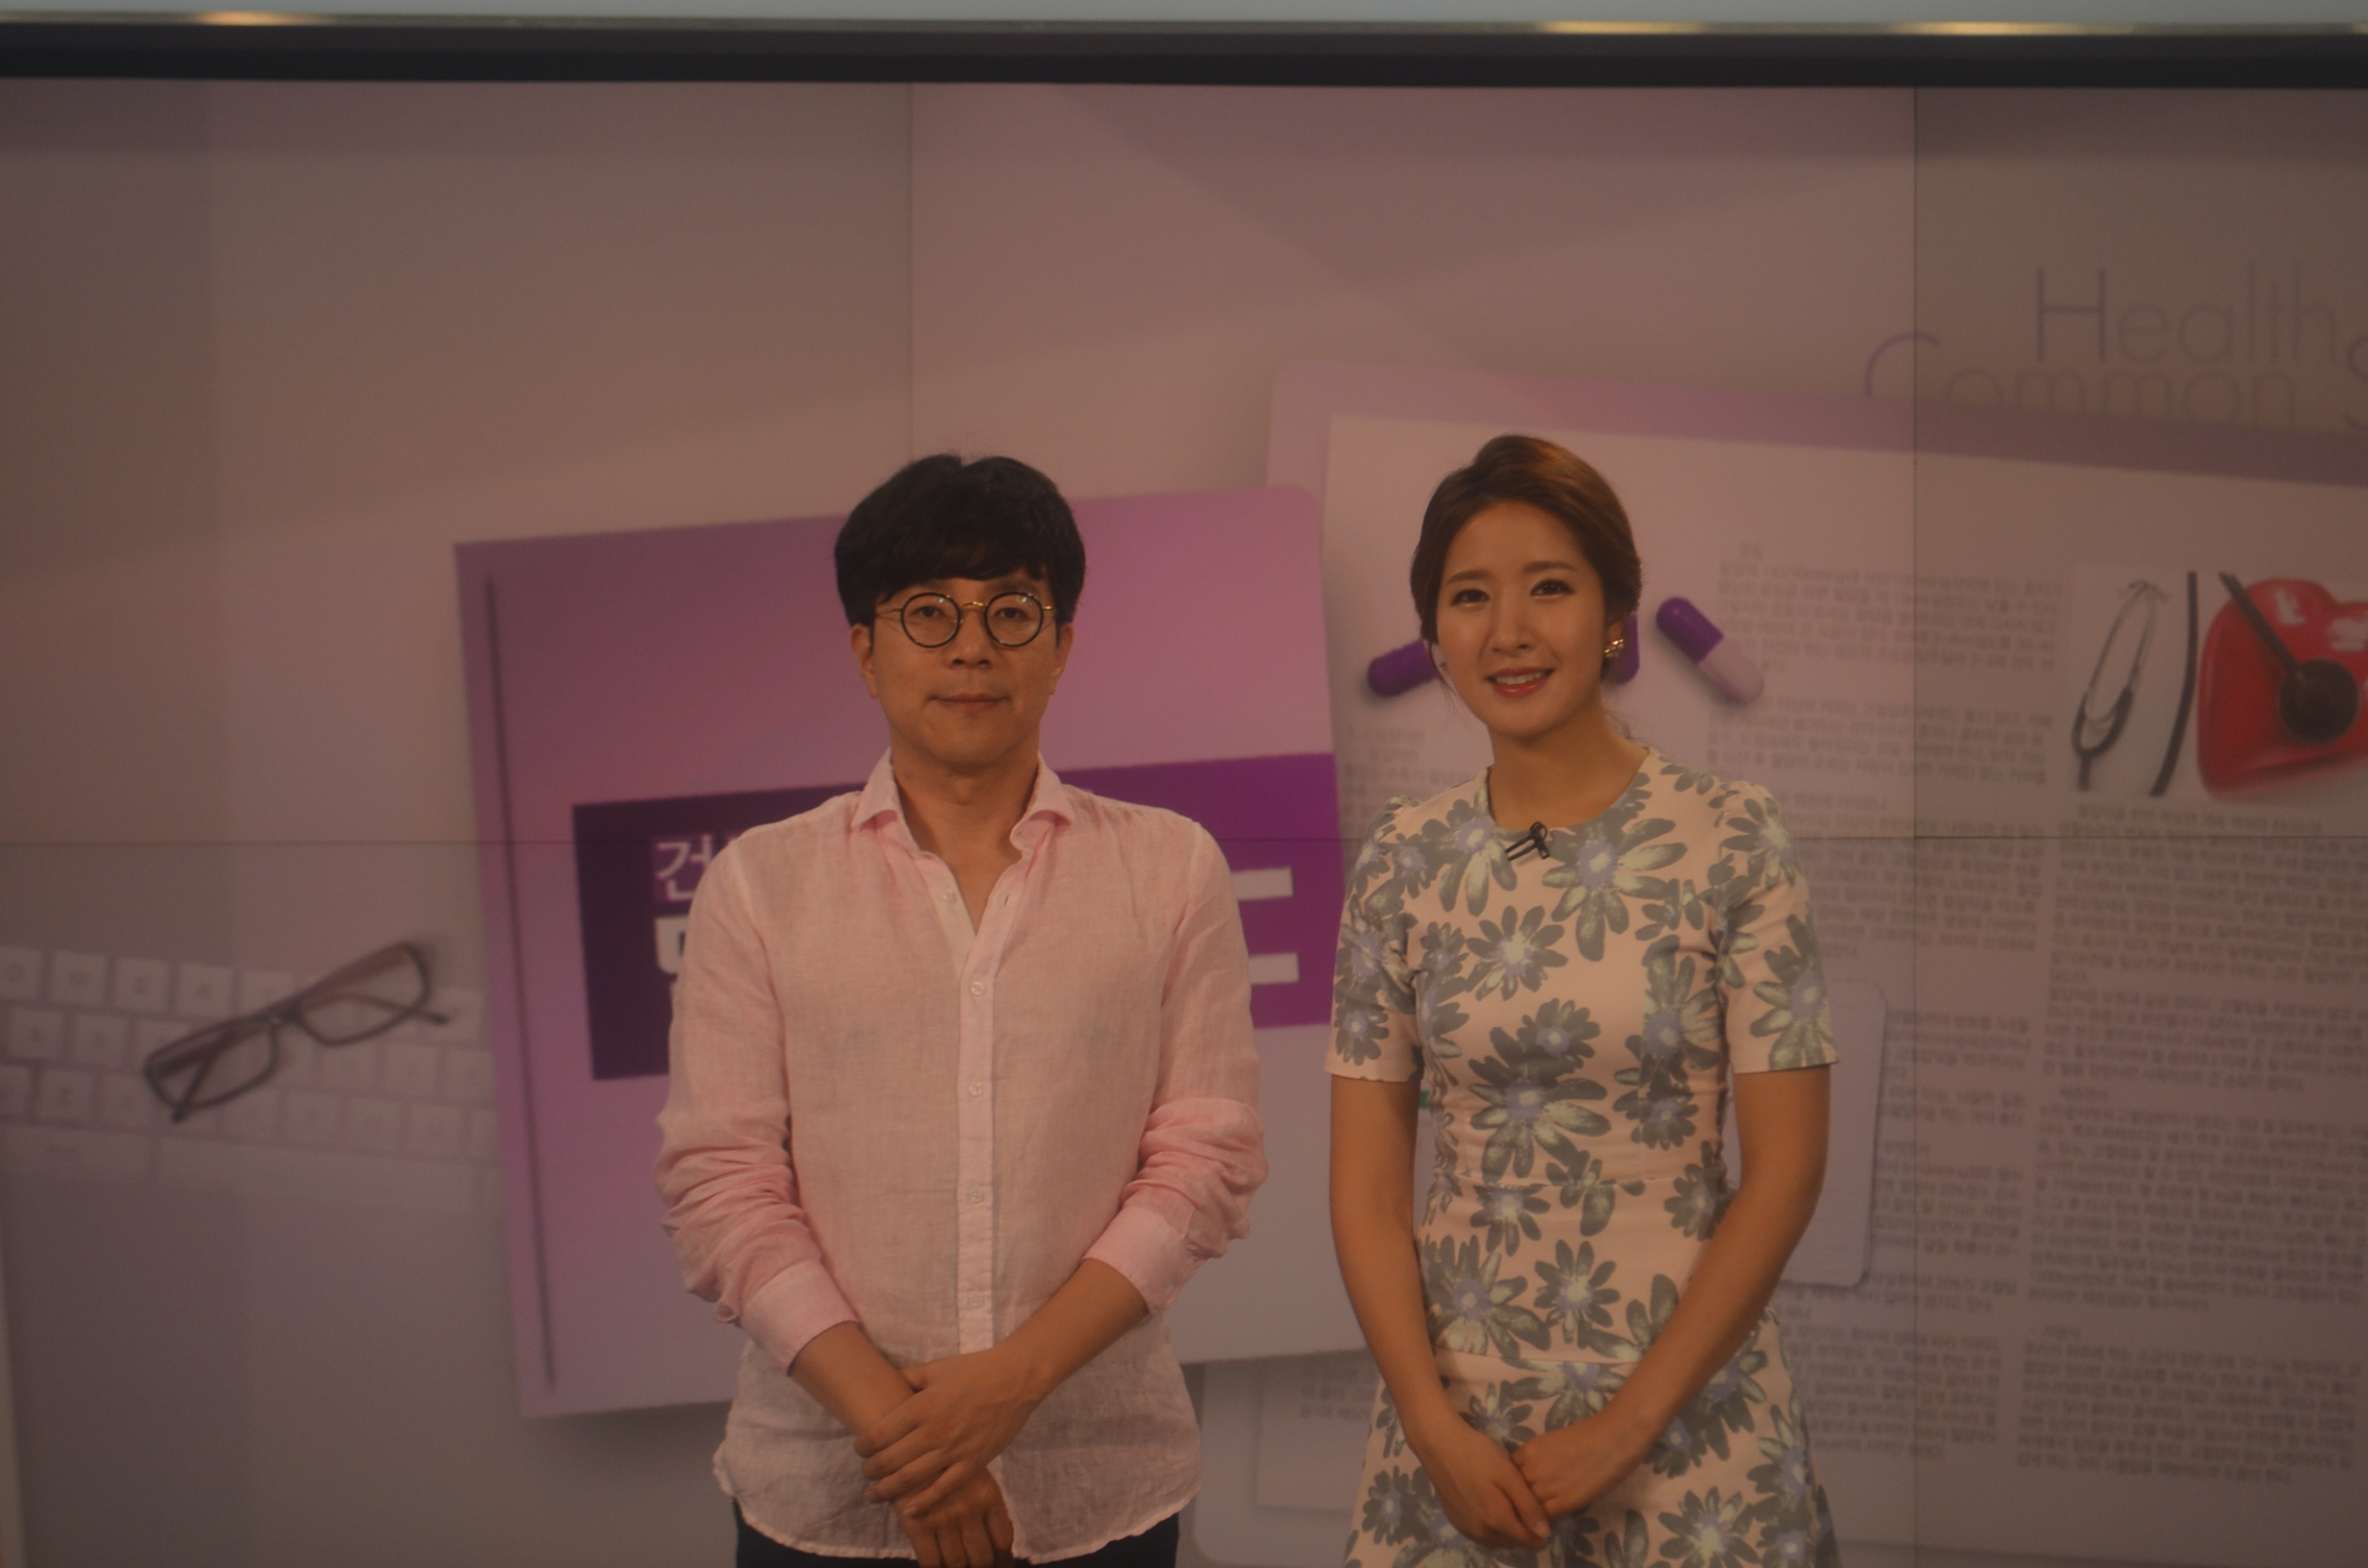 임건묵 대표원장님 모공과 리프팅 관련 MBC방송 영상입니다.